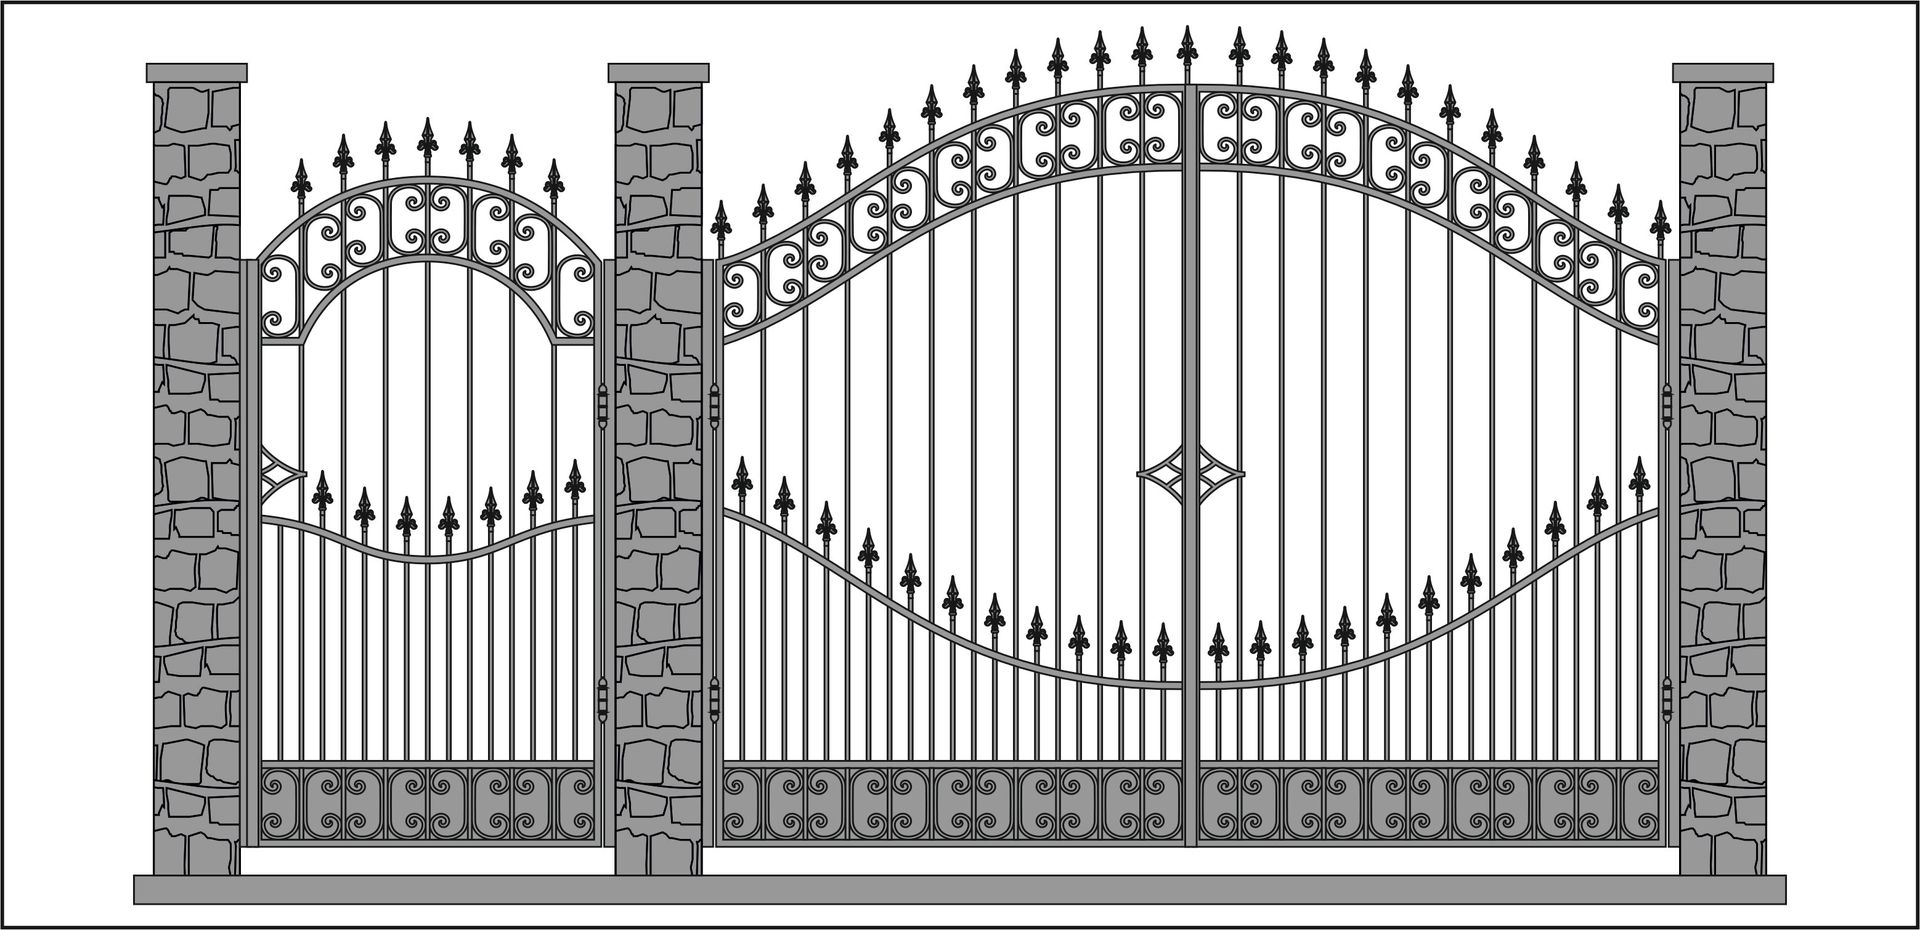 Декоративный забор для дачи — функции виды и требования к ограде, варианты декоративного оформления забора своими руками (фото + видео)